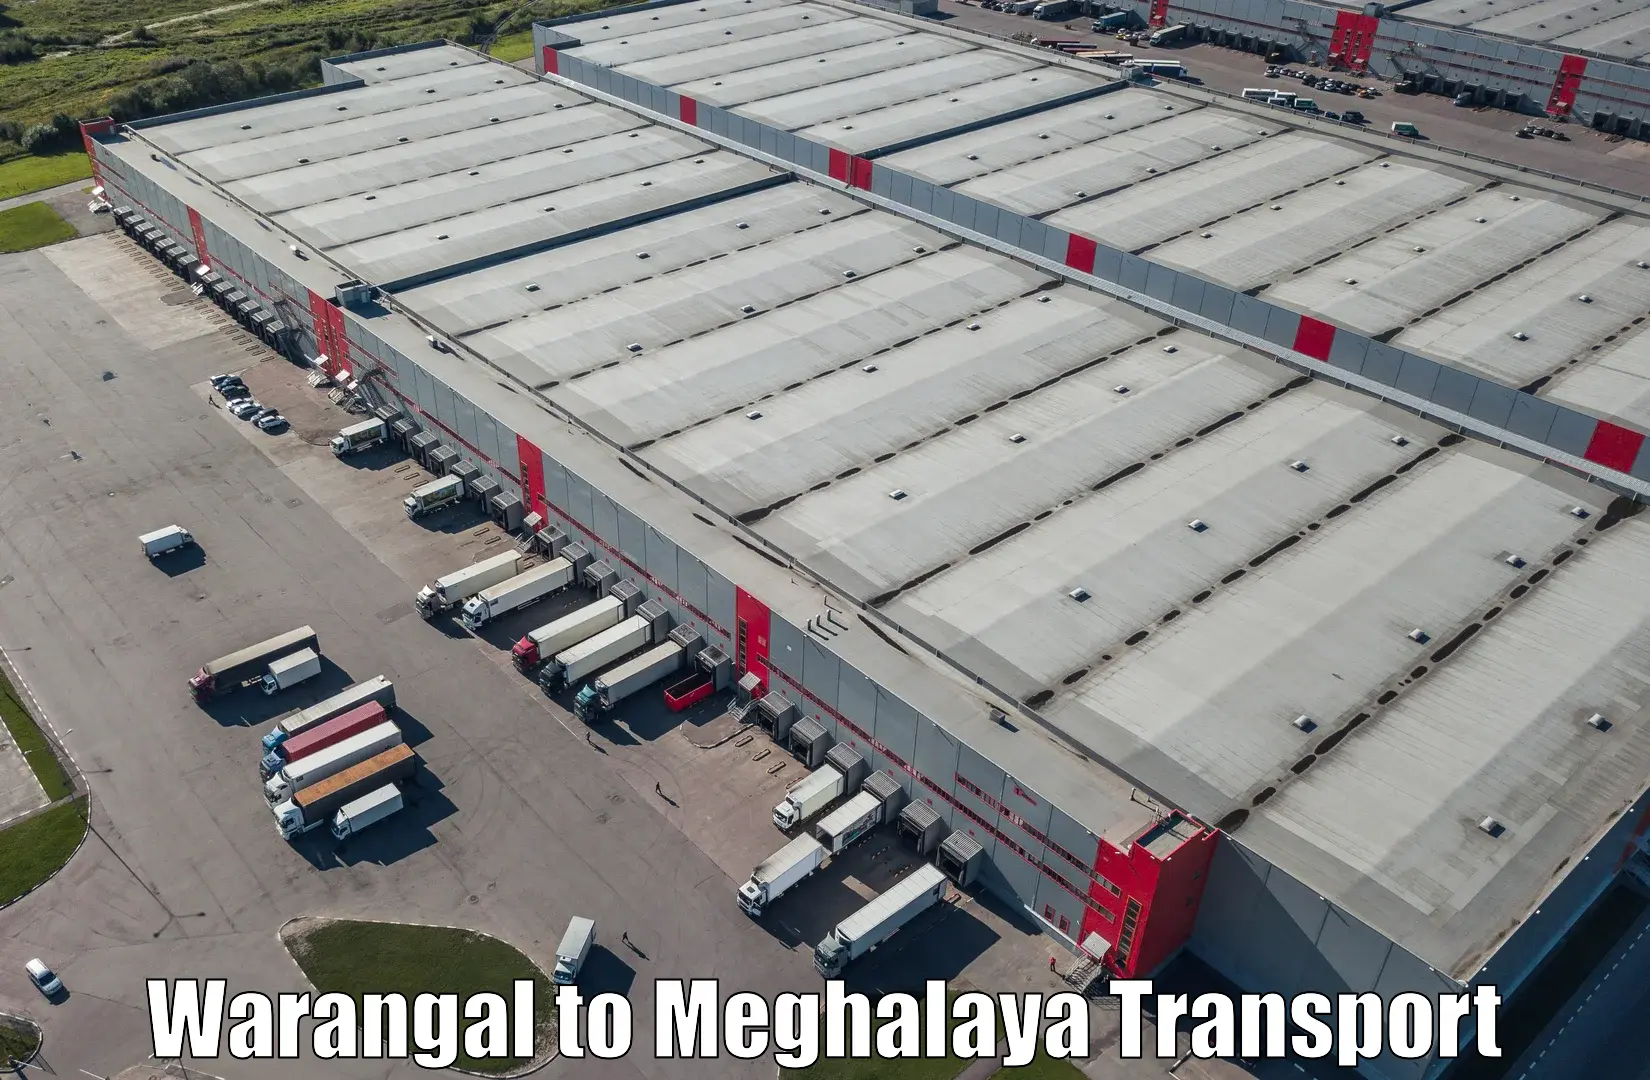 Daily transport service Warangal to Jaintia Hills